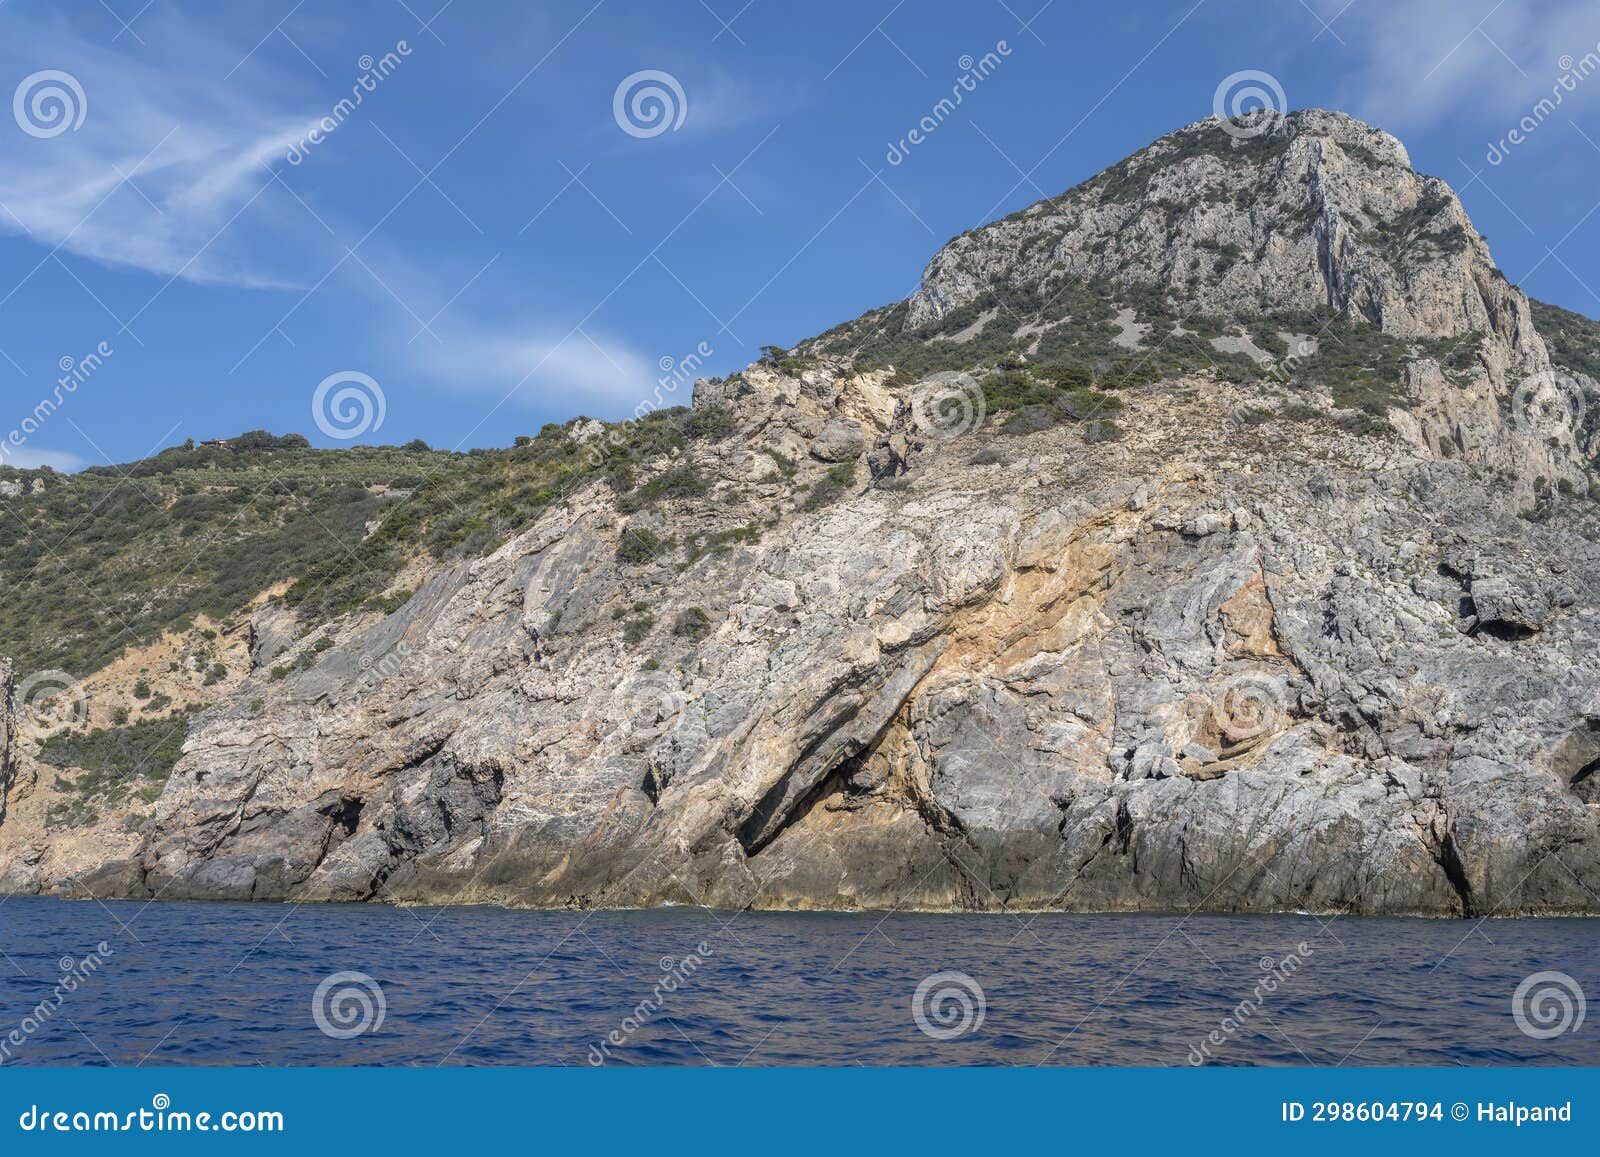 steep cliffs at uomo cape, argentario, italy